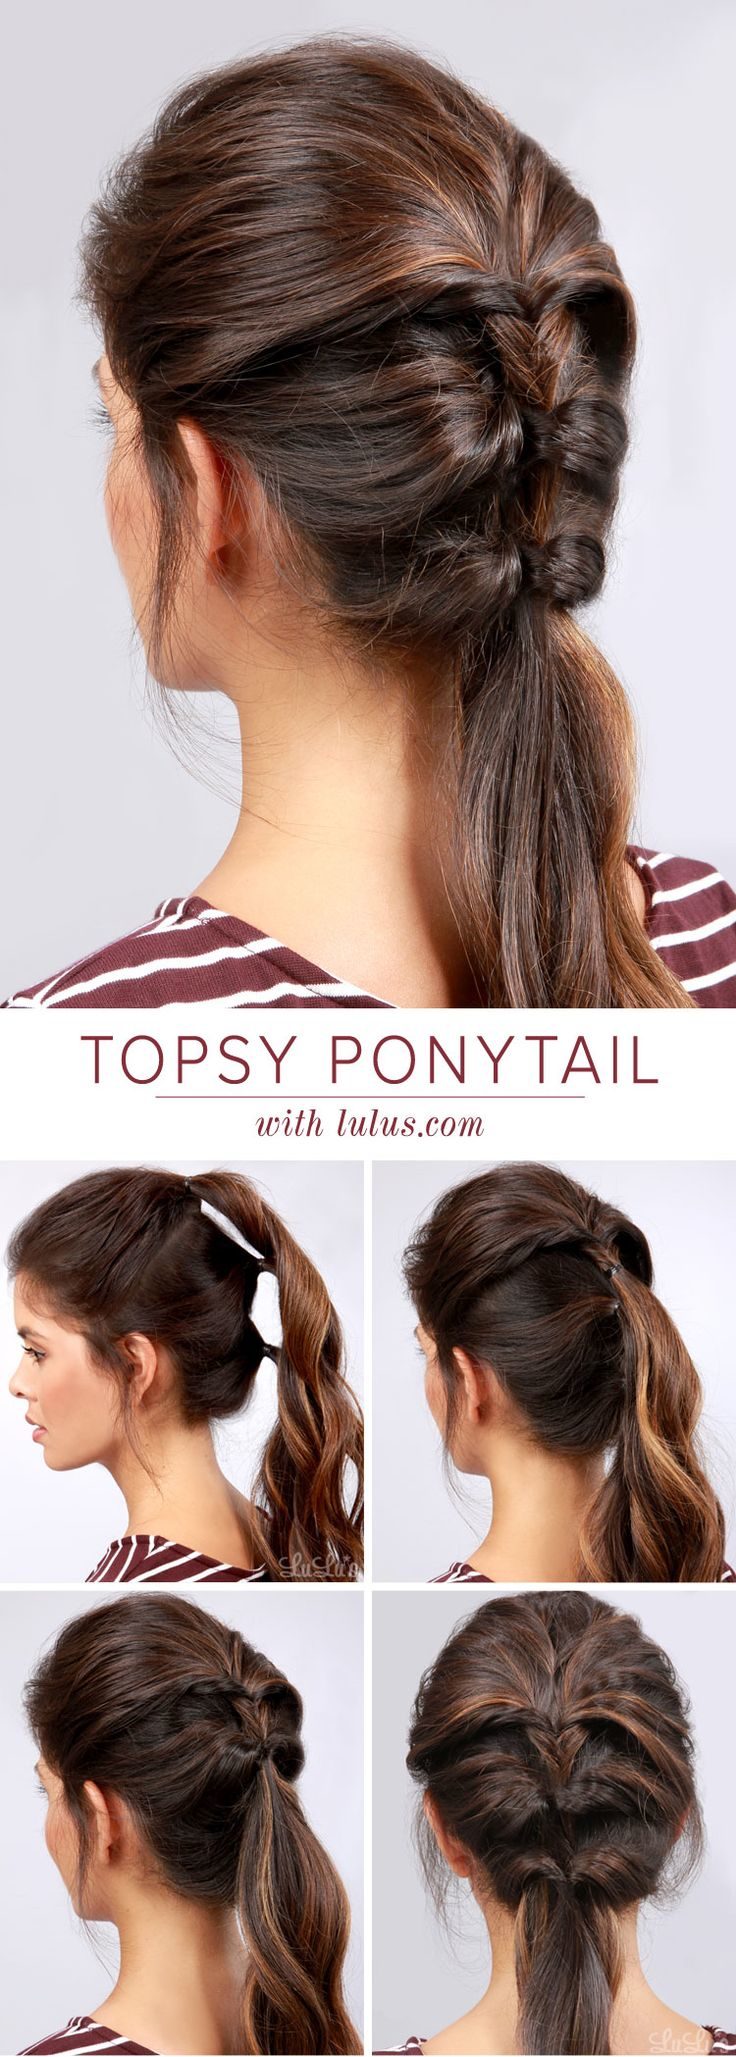 topsy-ponytail-styles